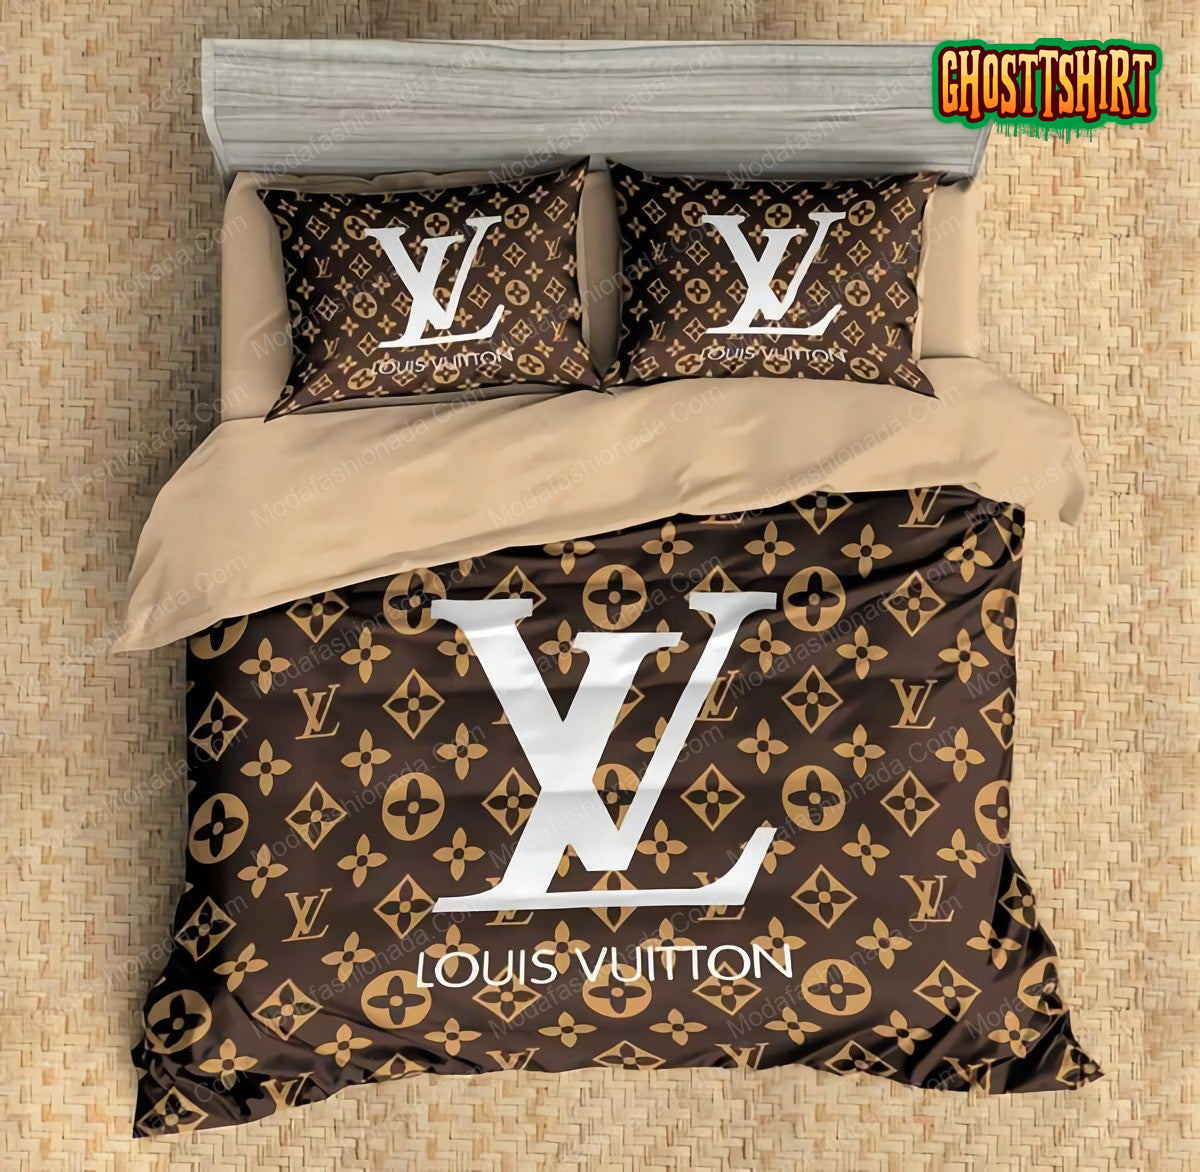 Buy Louis Vuitton Bedding Sets Bed Sets Bedroom Sets Comforter Sets Duvet  Cover Bedspread